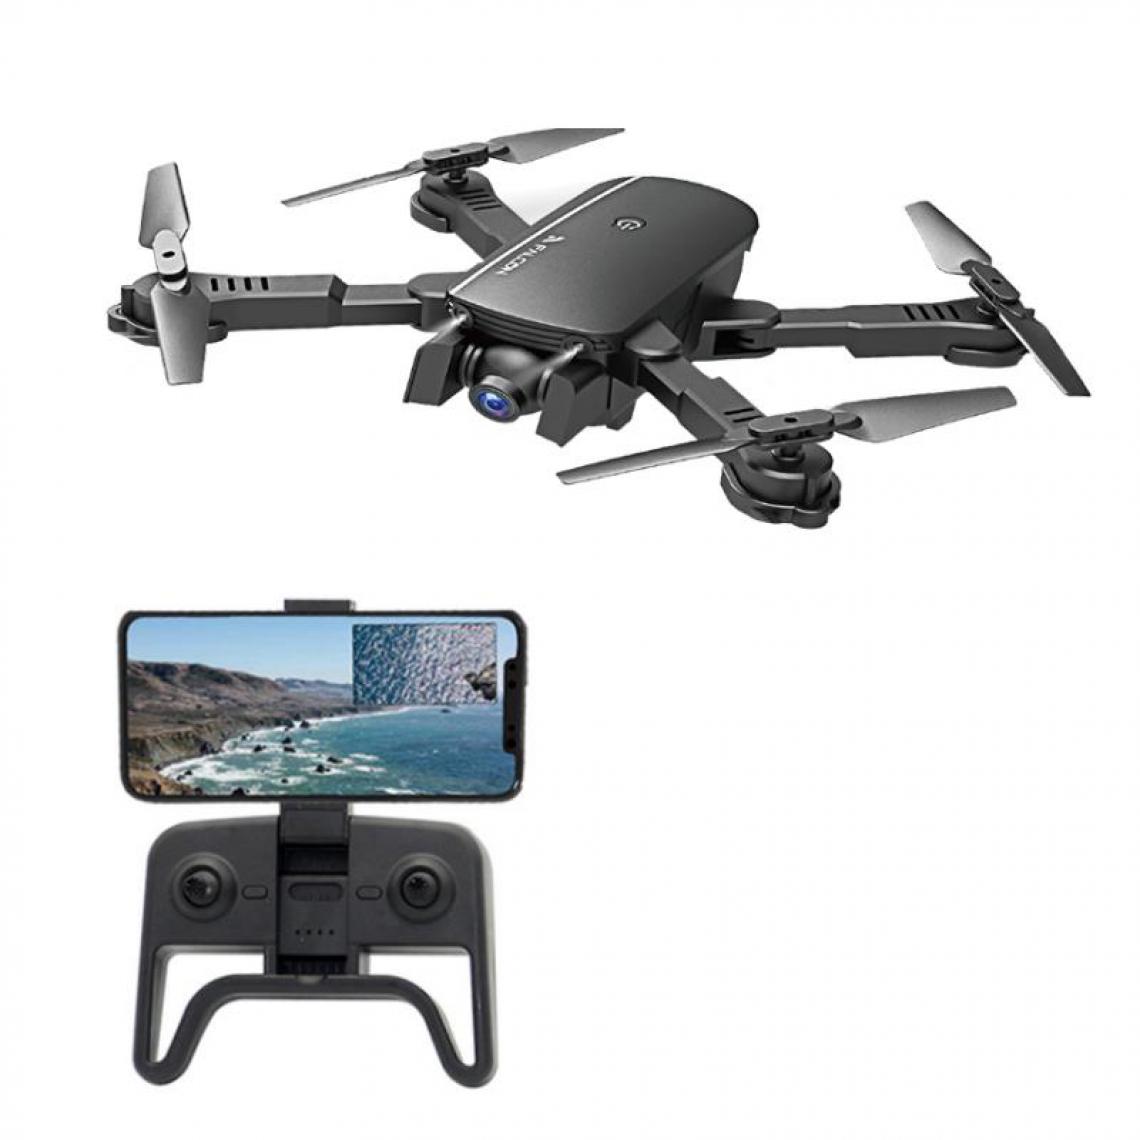 Justgreenbox - WIFI FPV avec caméra grand angle 4K Drone RC pliable Quadcopter RTF, One La batterie - Drone connecté